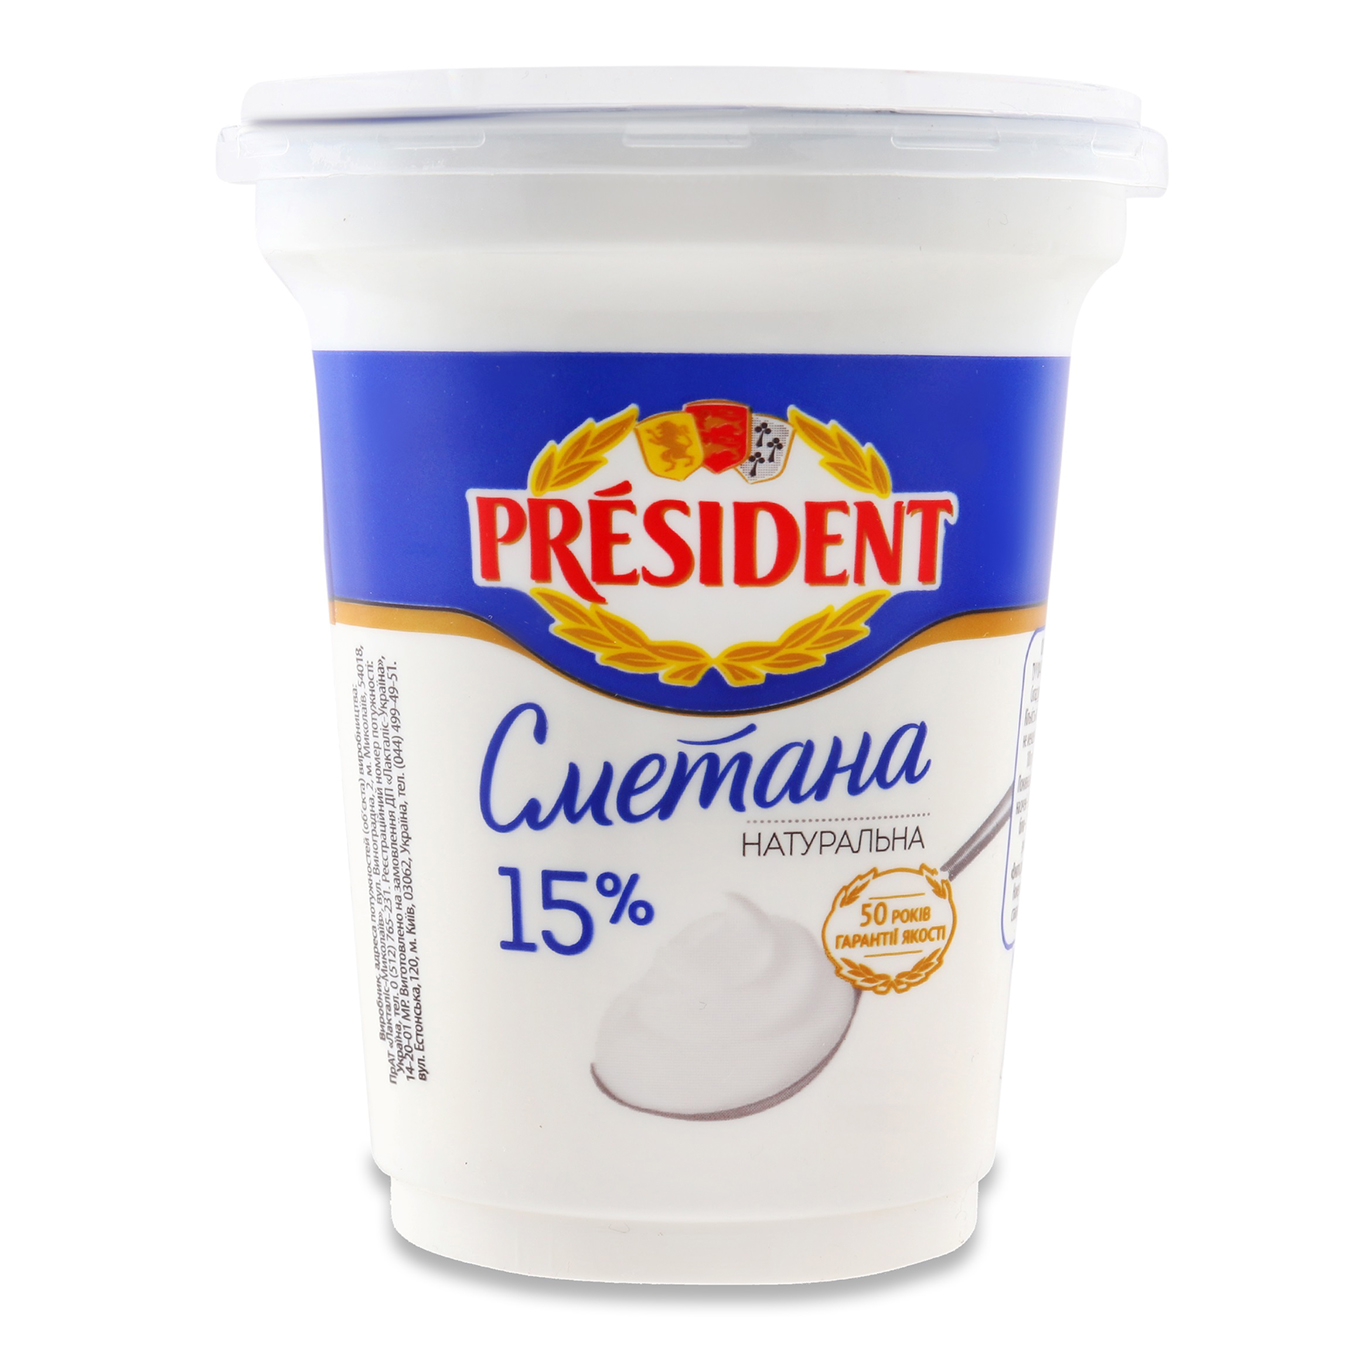 President Sour Cream 15% 300g